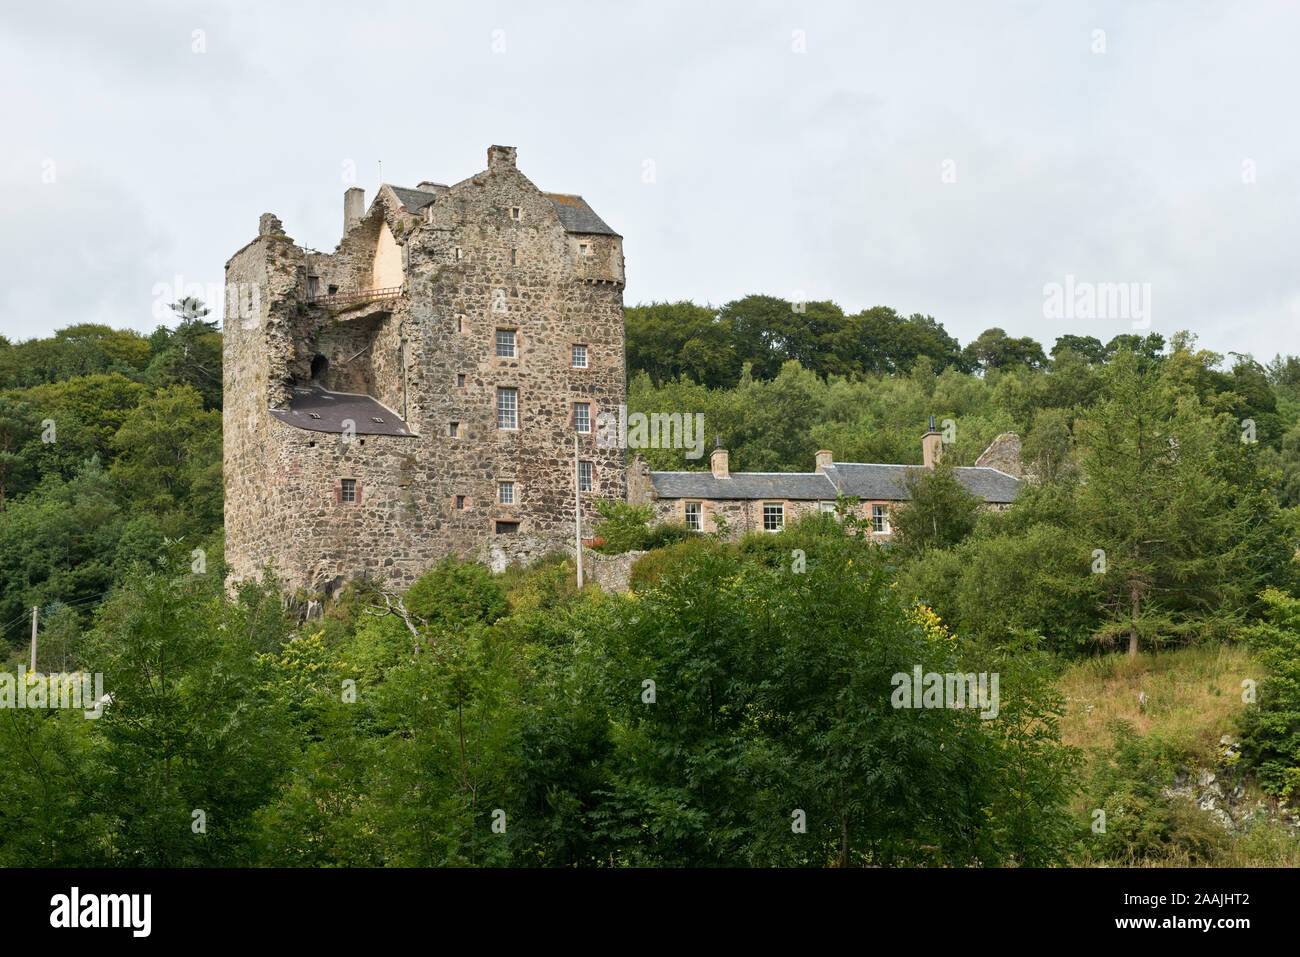 Neidpath Castle. Tower House situé en hauteur avec vue sur les méandres de la rivière Tweed. Scottish Borders, Royaume-Uni Banque D'Images